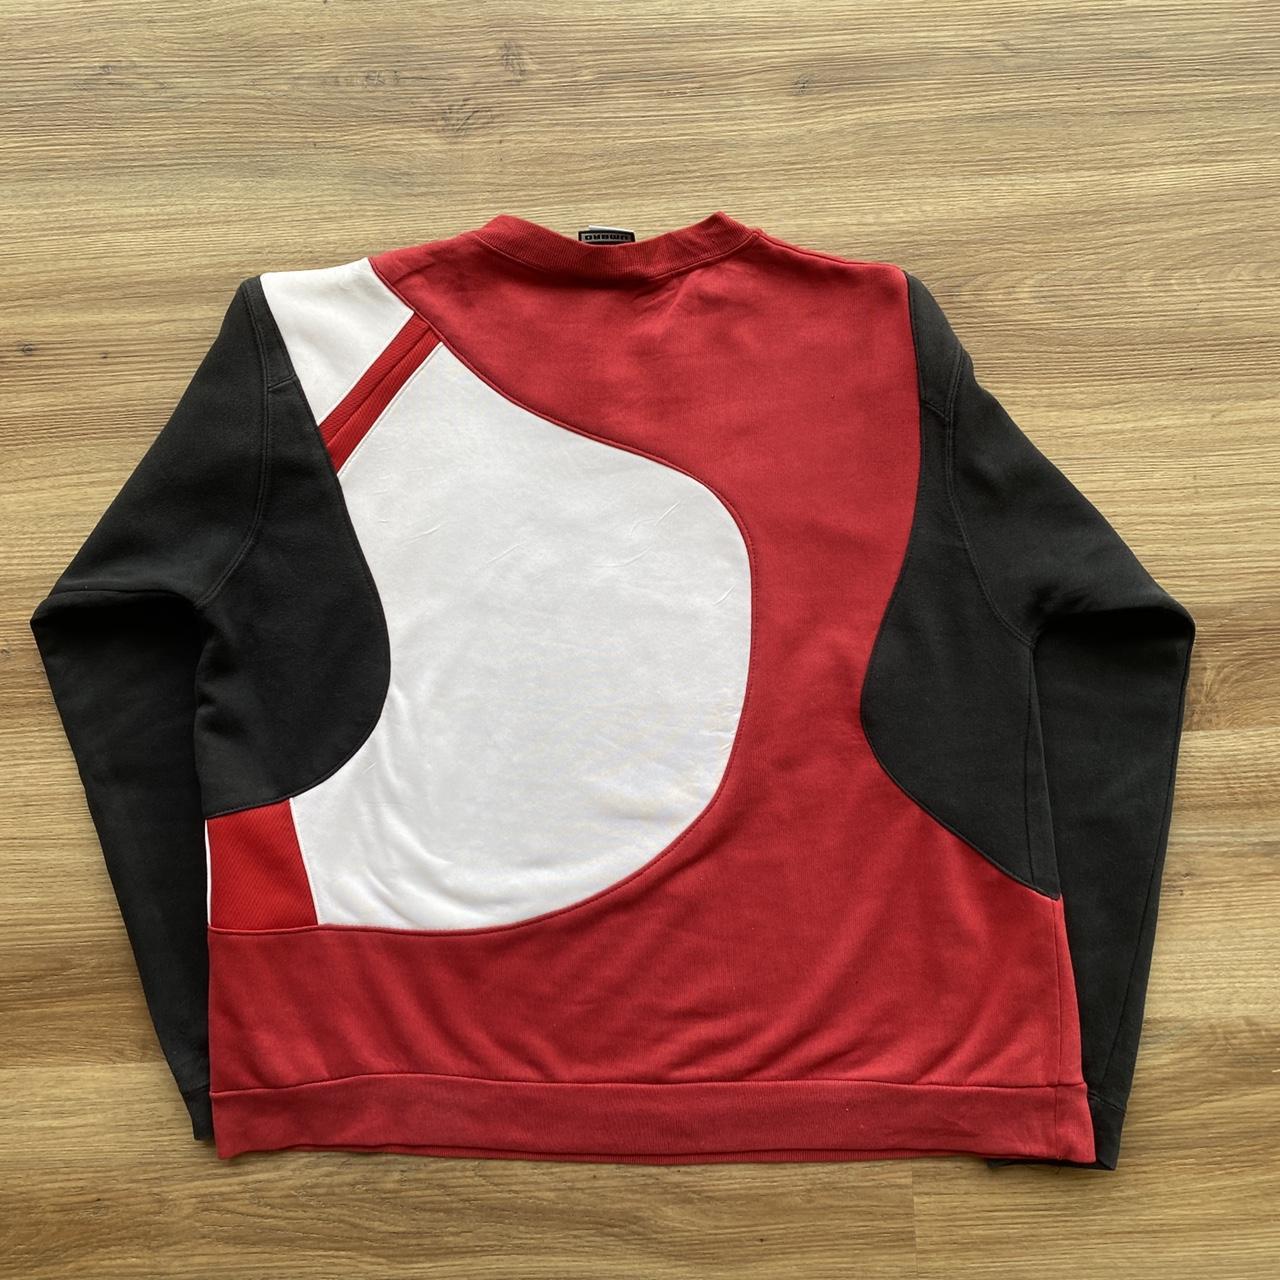 Umbro Men's Red and White Sweatshirt | Depop